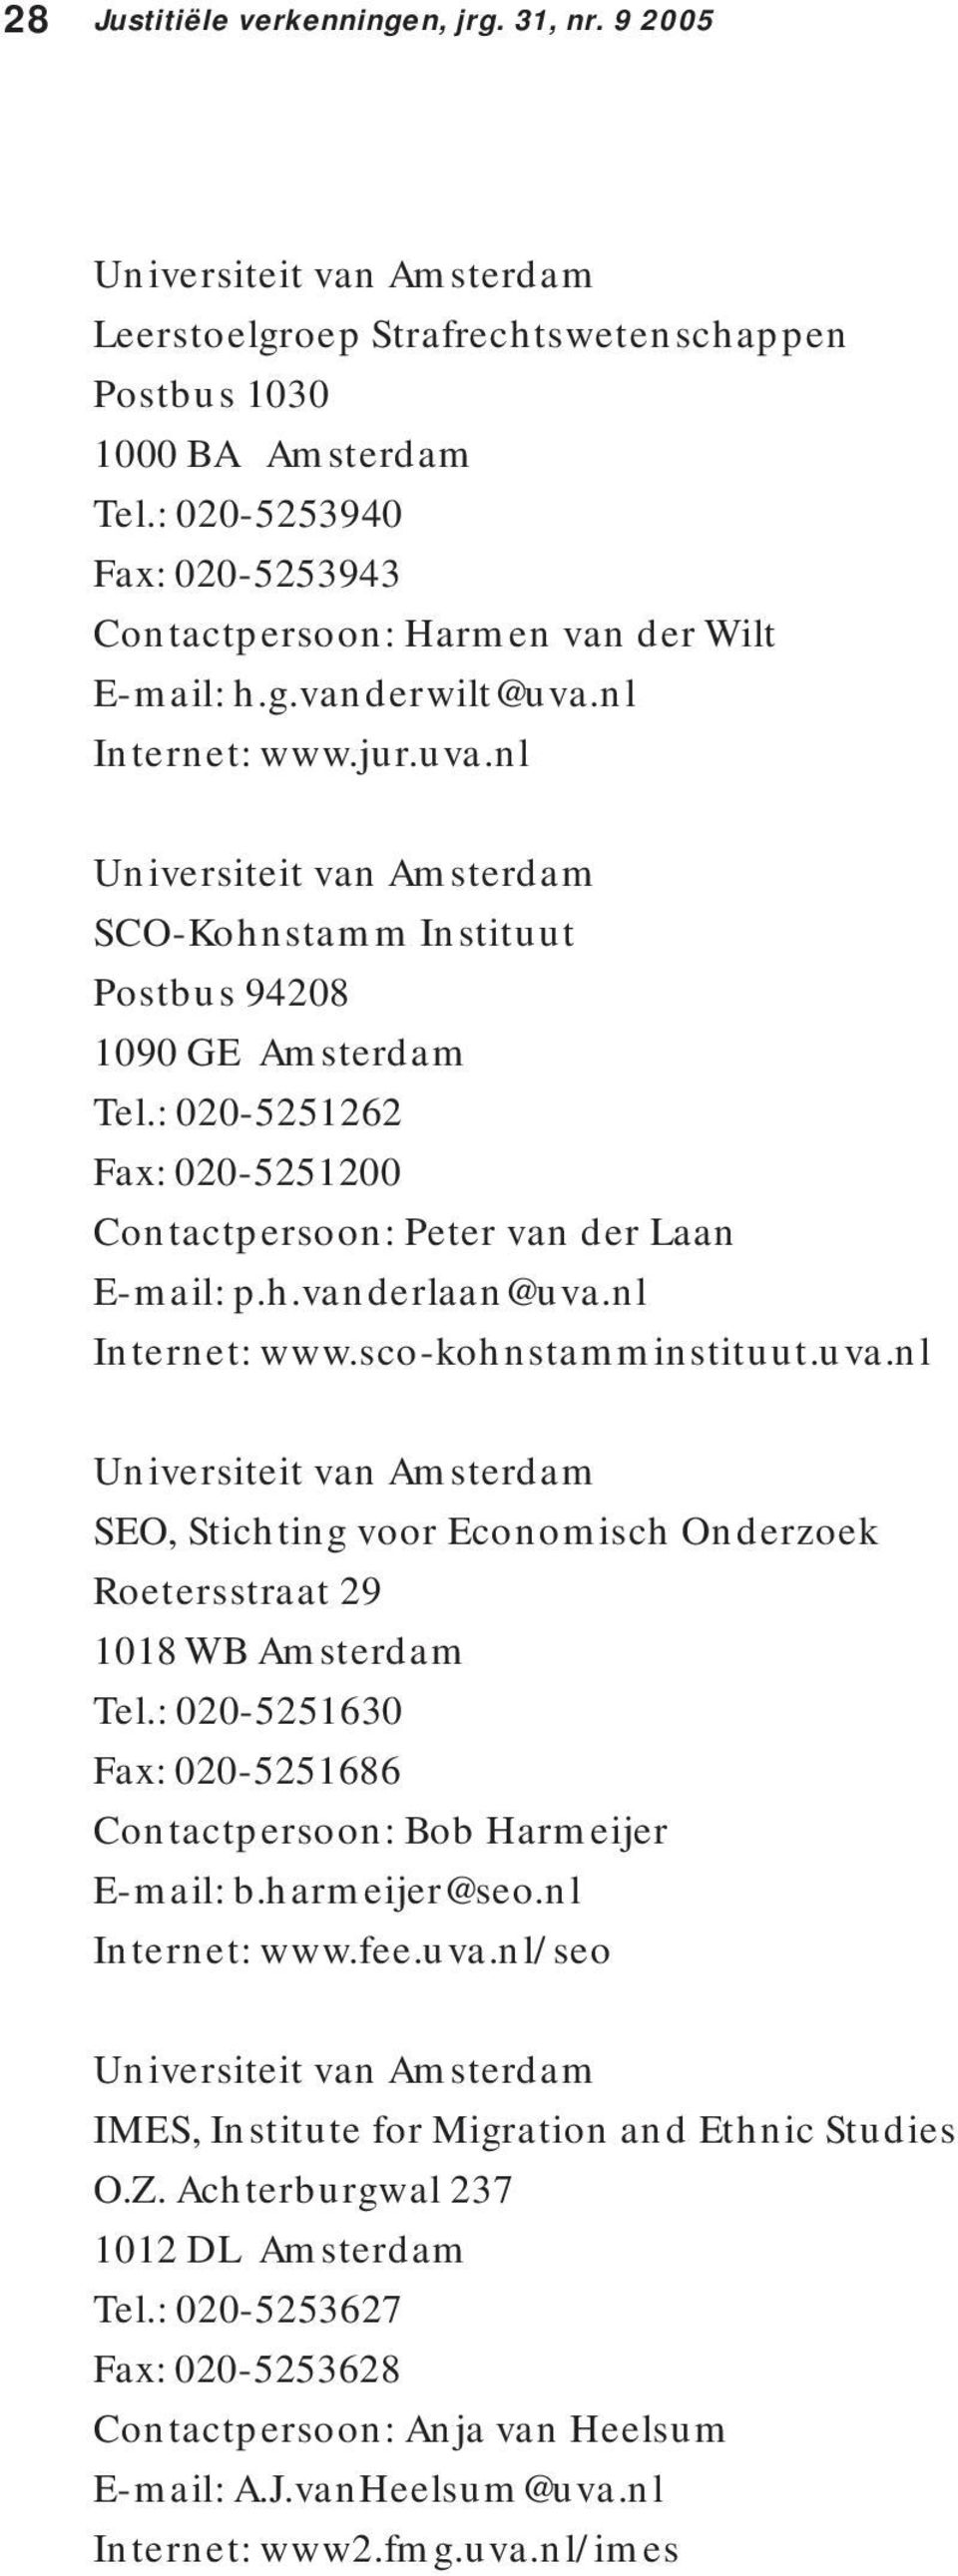 : 020-5251262 Fax: 020-5251200 Contactpersoon: Peter van der Laan E-mail: p.h.vanderlaan@uva.